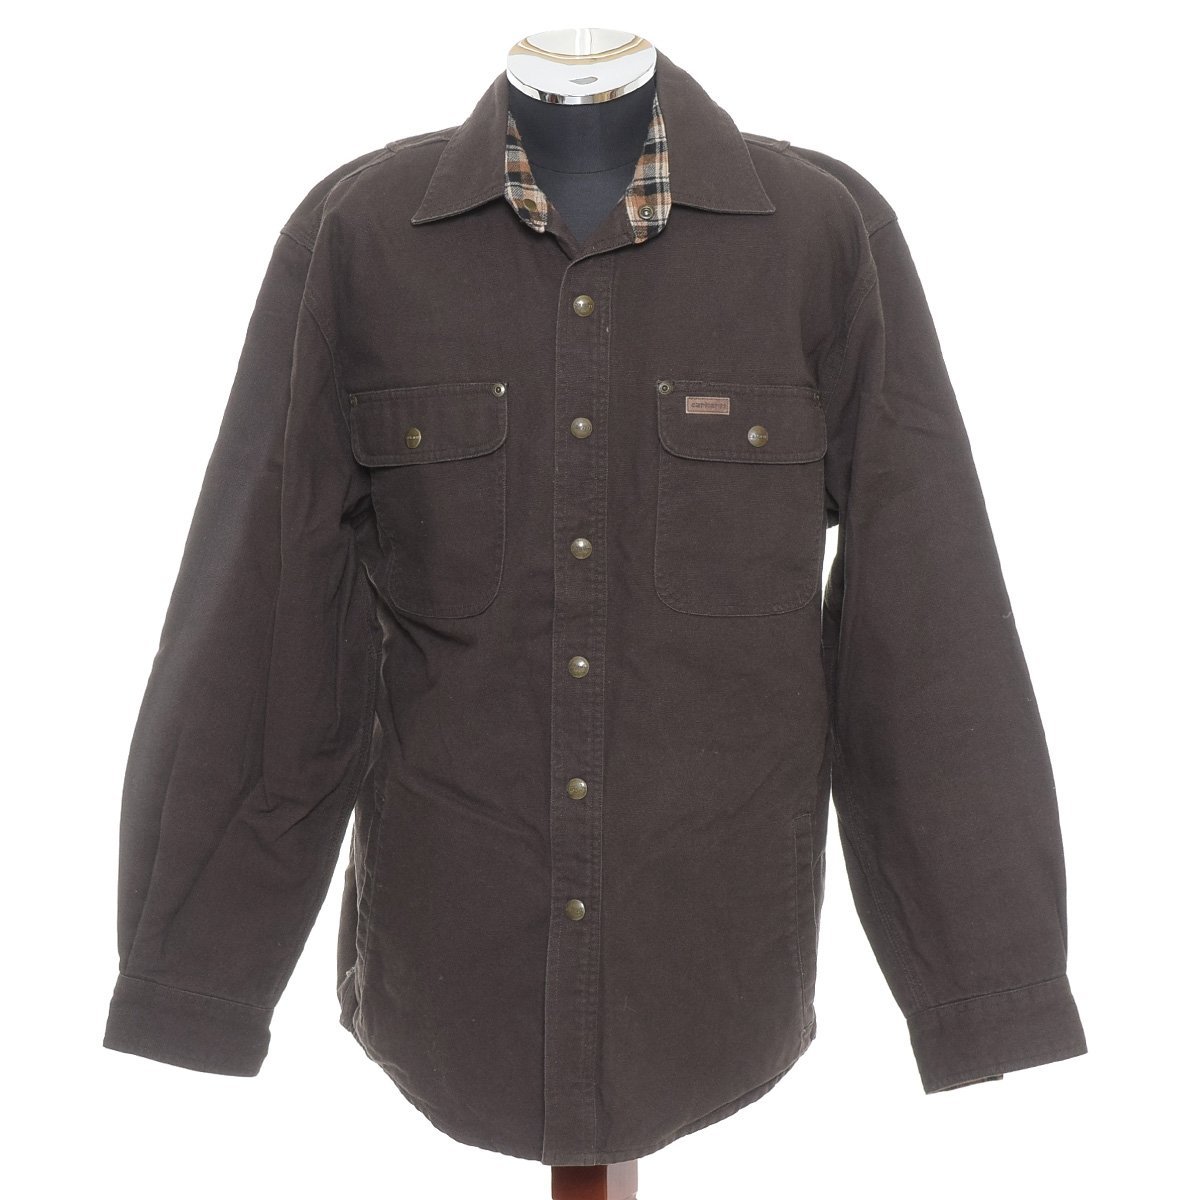 ◆501545 Carhartt カーハート ◆ワークシャツ ダックジャケット 100590 201 サイズS メンズ ブラウン